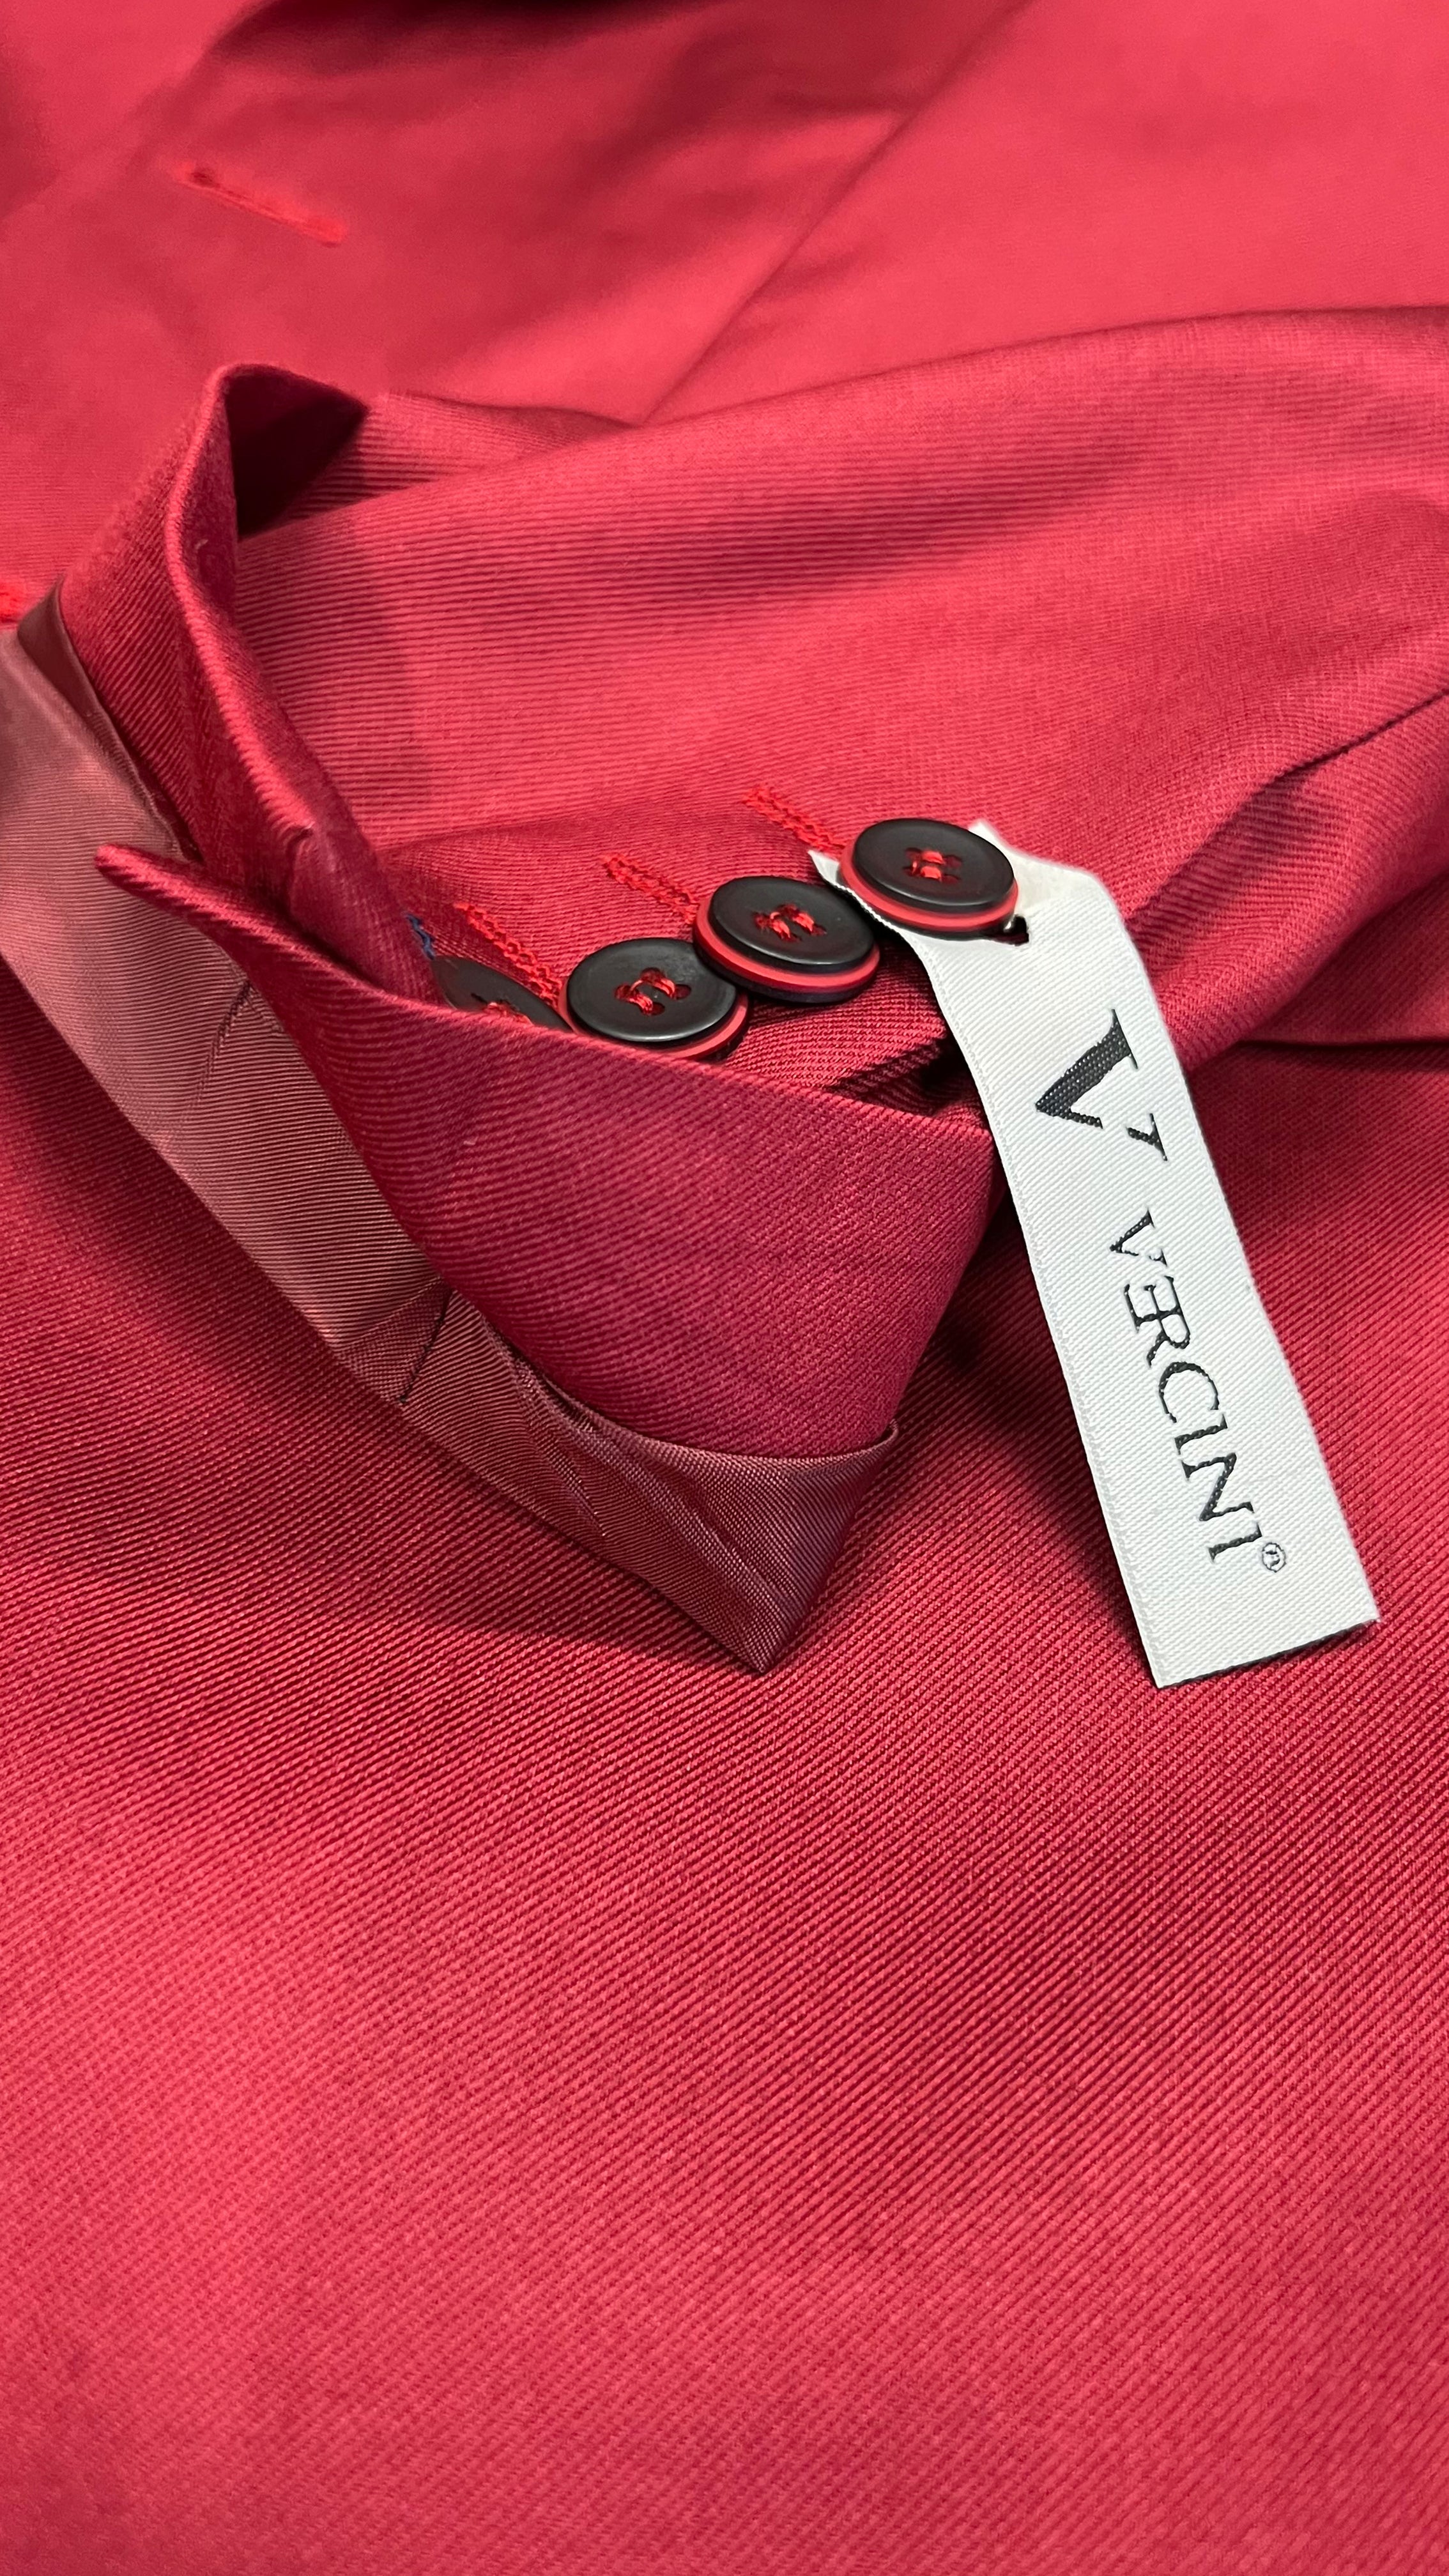 Men's Vibrant Red Blazer by Vercini